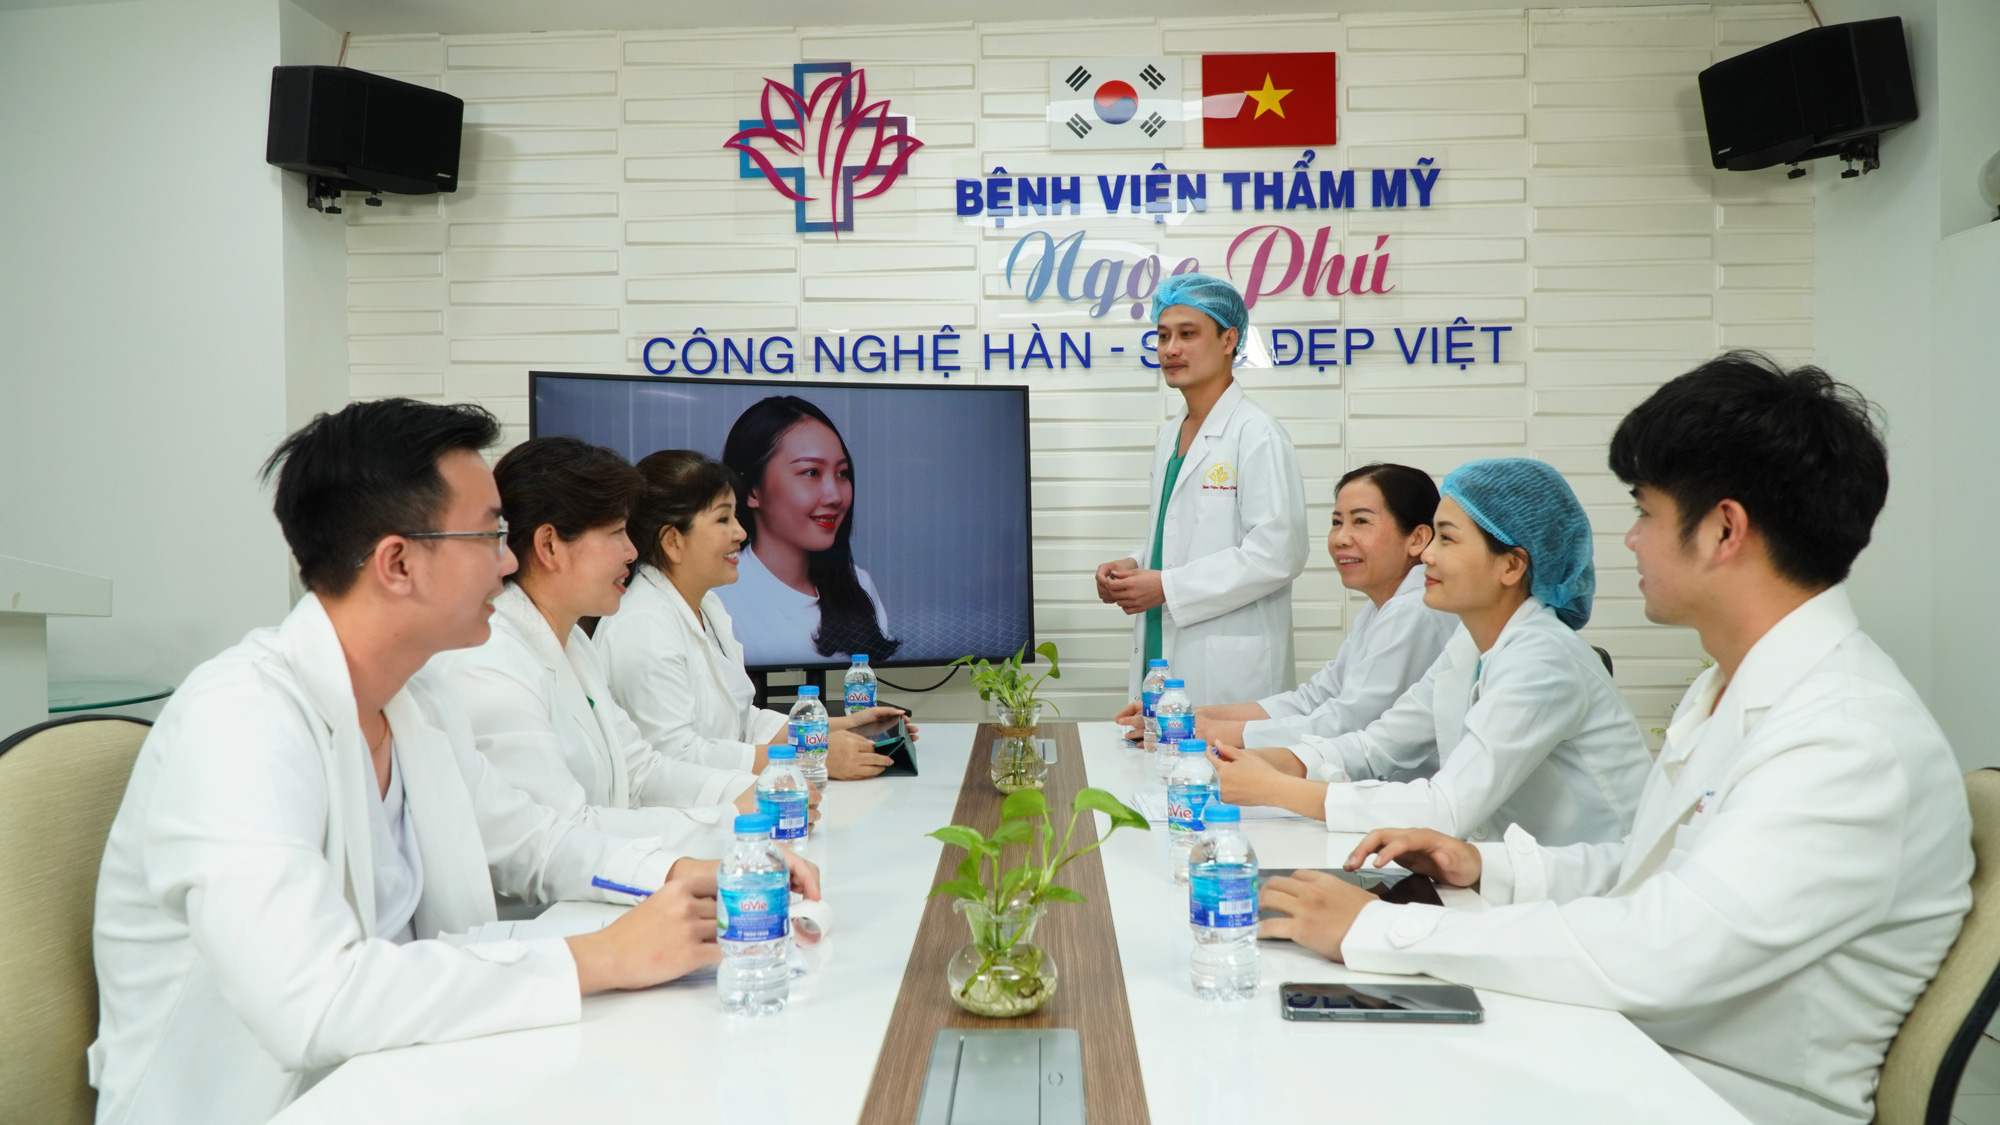 Bệnh viện Thẩm mỹ Ngọc Phú ưu đãi làm đẹp lên đến 50% nhân dịp đại lễ - Ảnh 4.